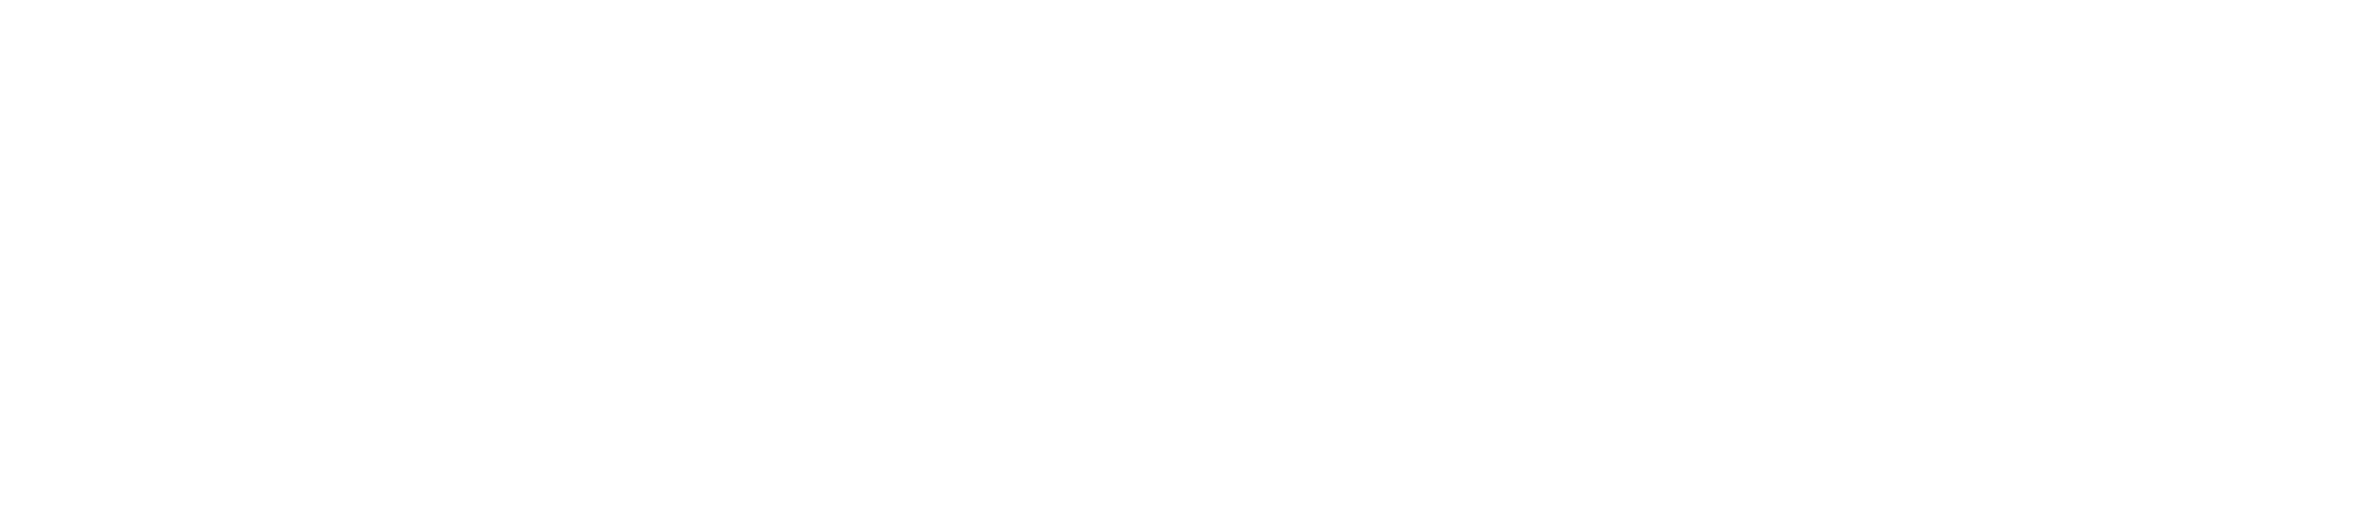 mjobacks_villan_logo_white